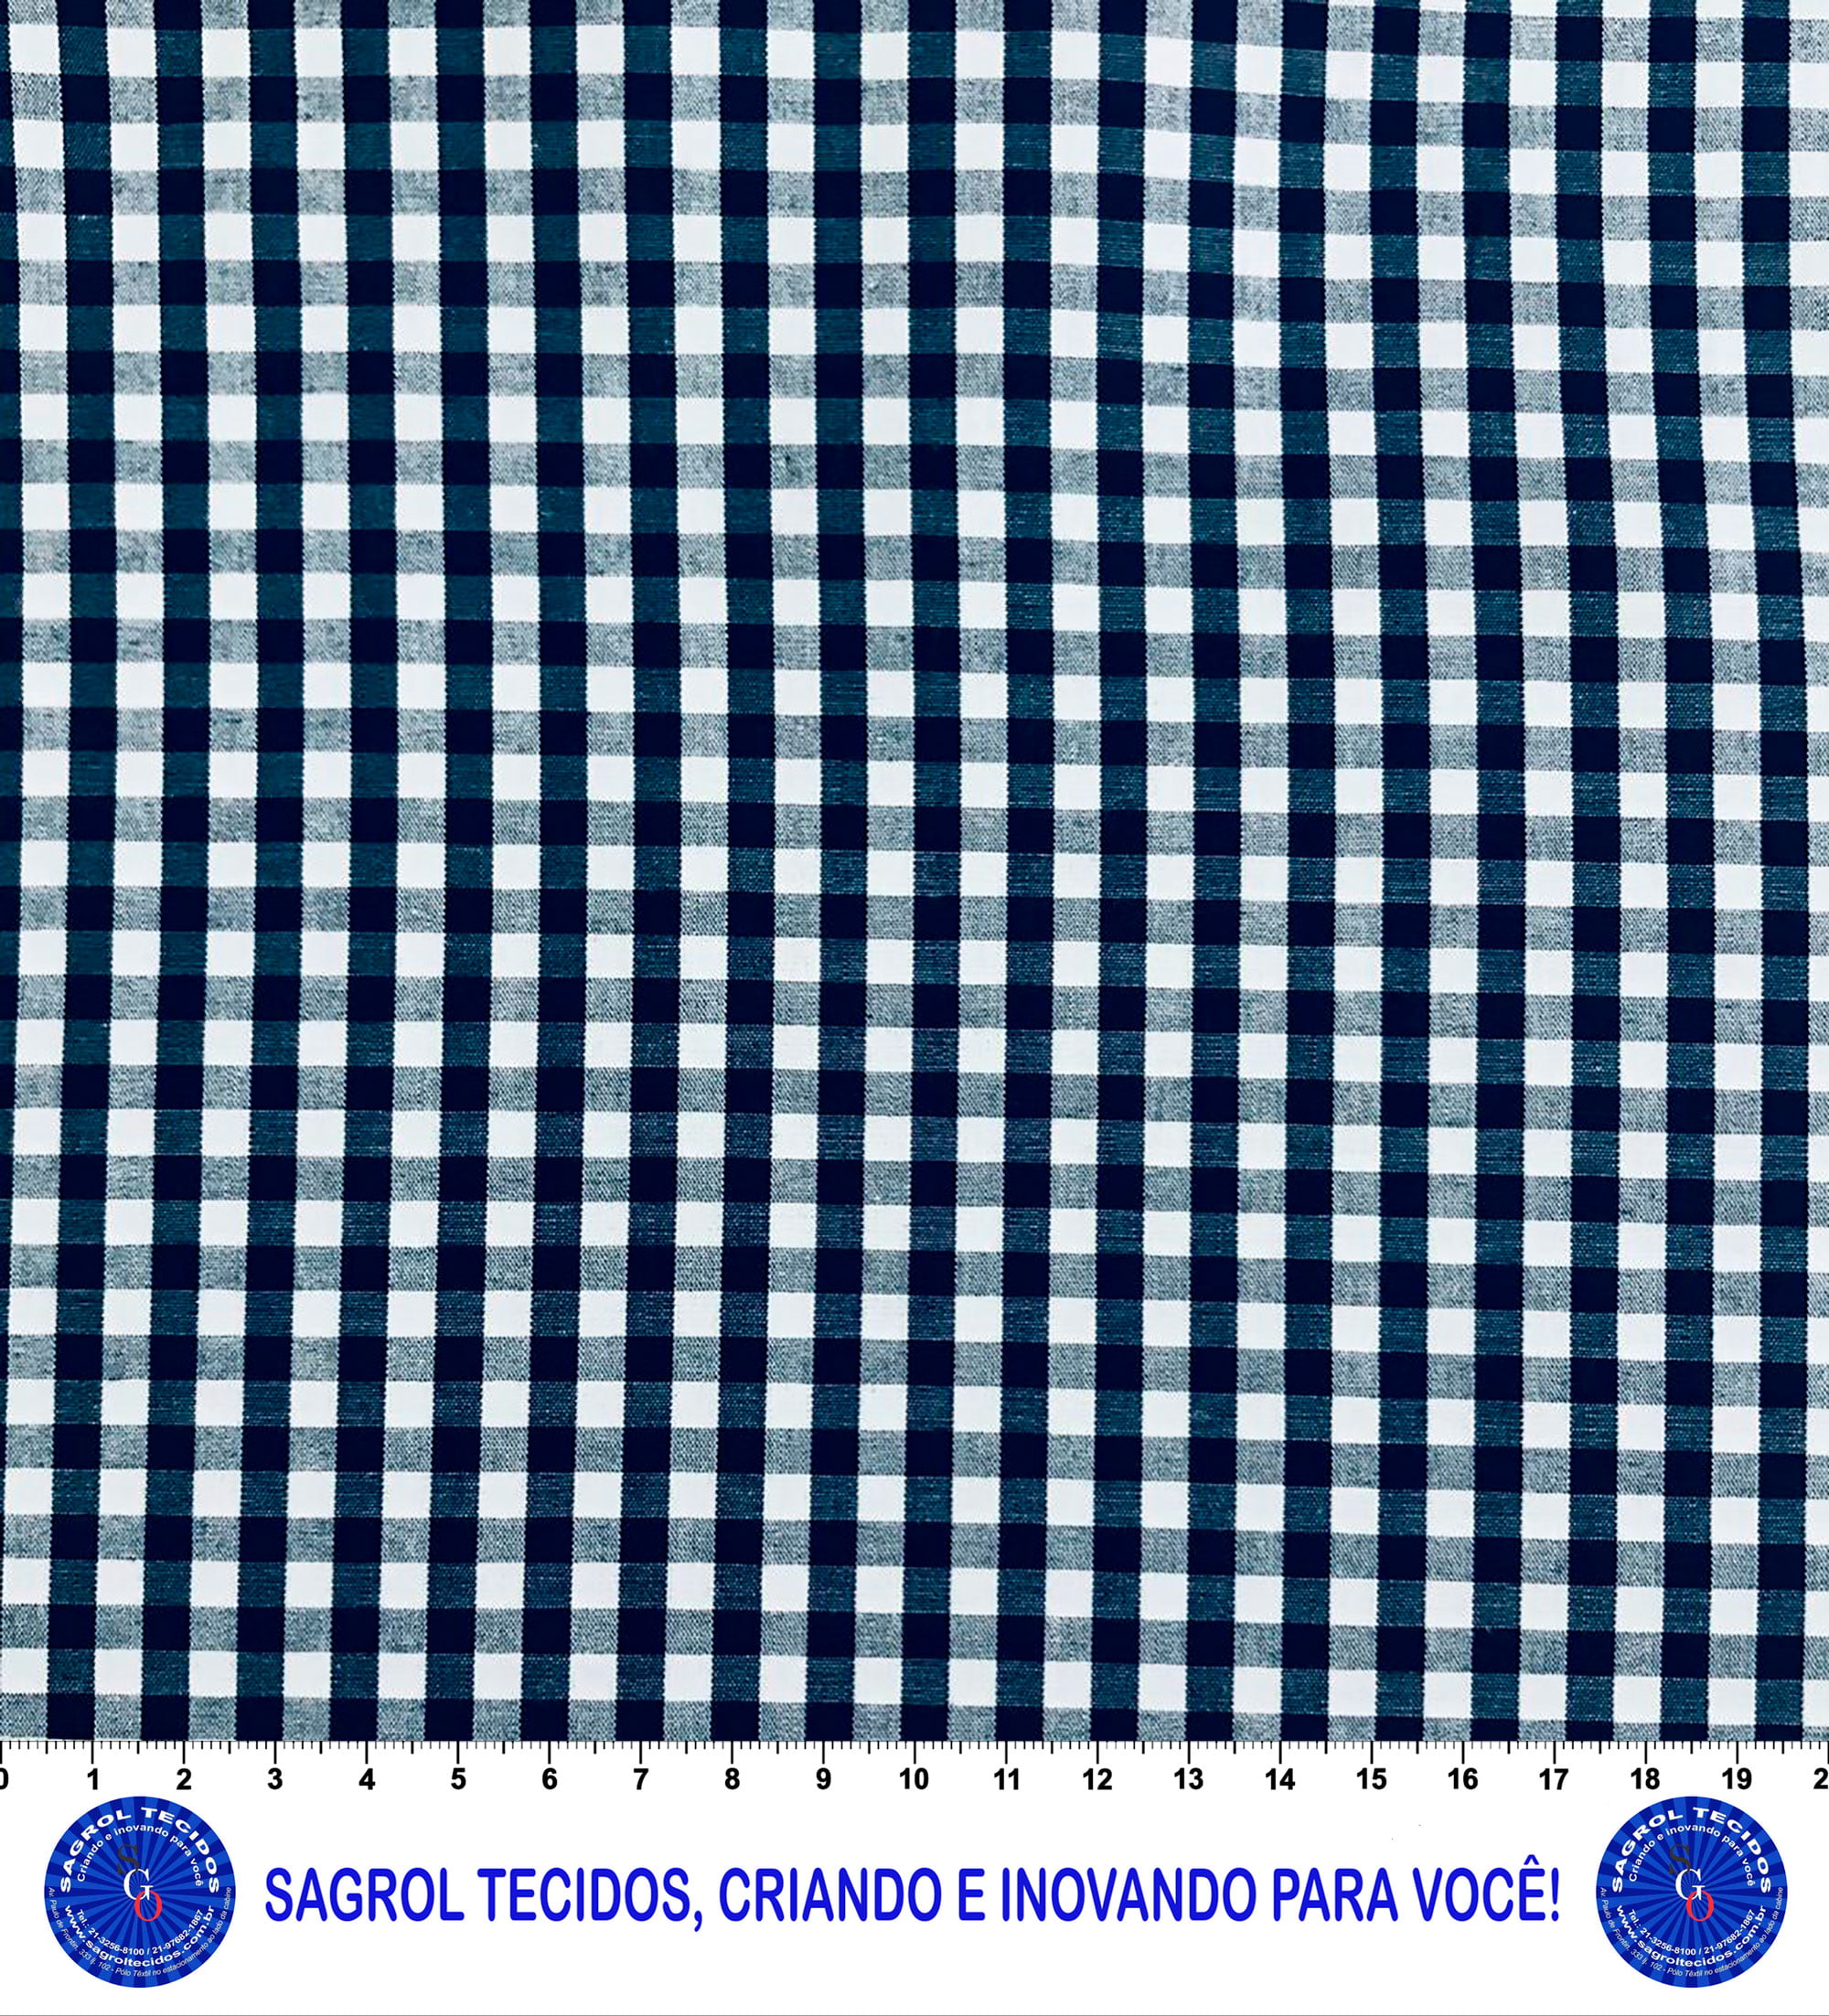 TECIDO TRICOLINE FIO-TINTO VICHY XADREZ 9XM (5mm) - MARINHO - 100% ALGODÃO COM 1,50 LG - REF. 708